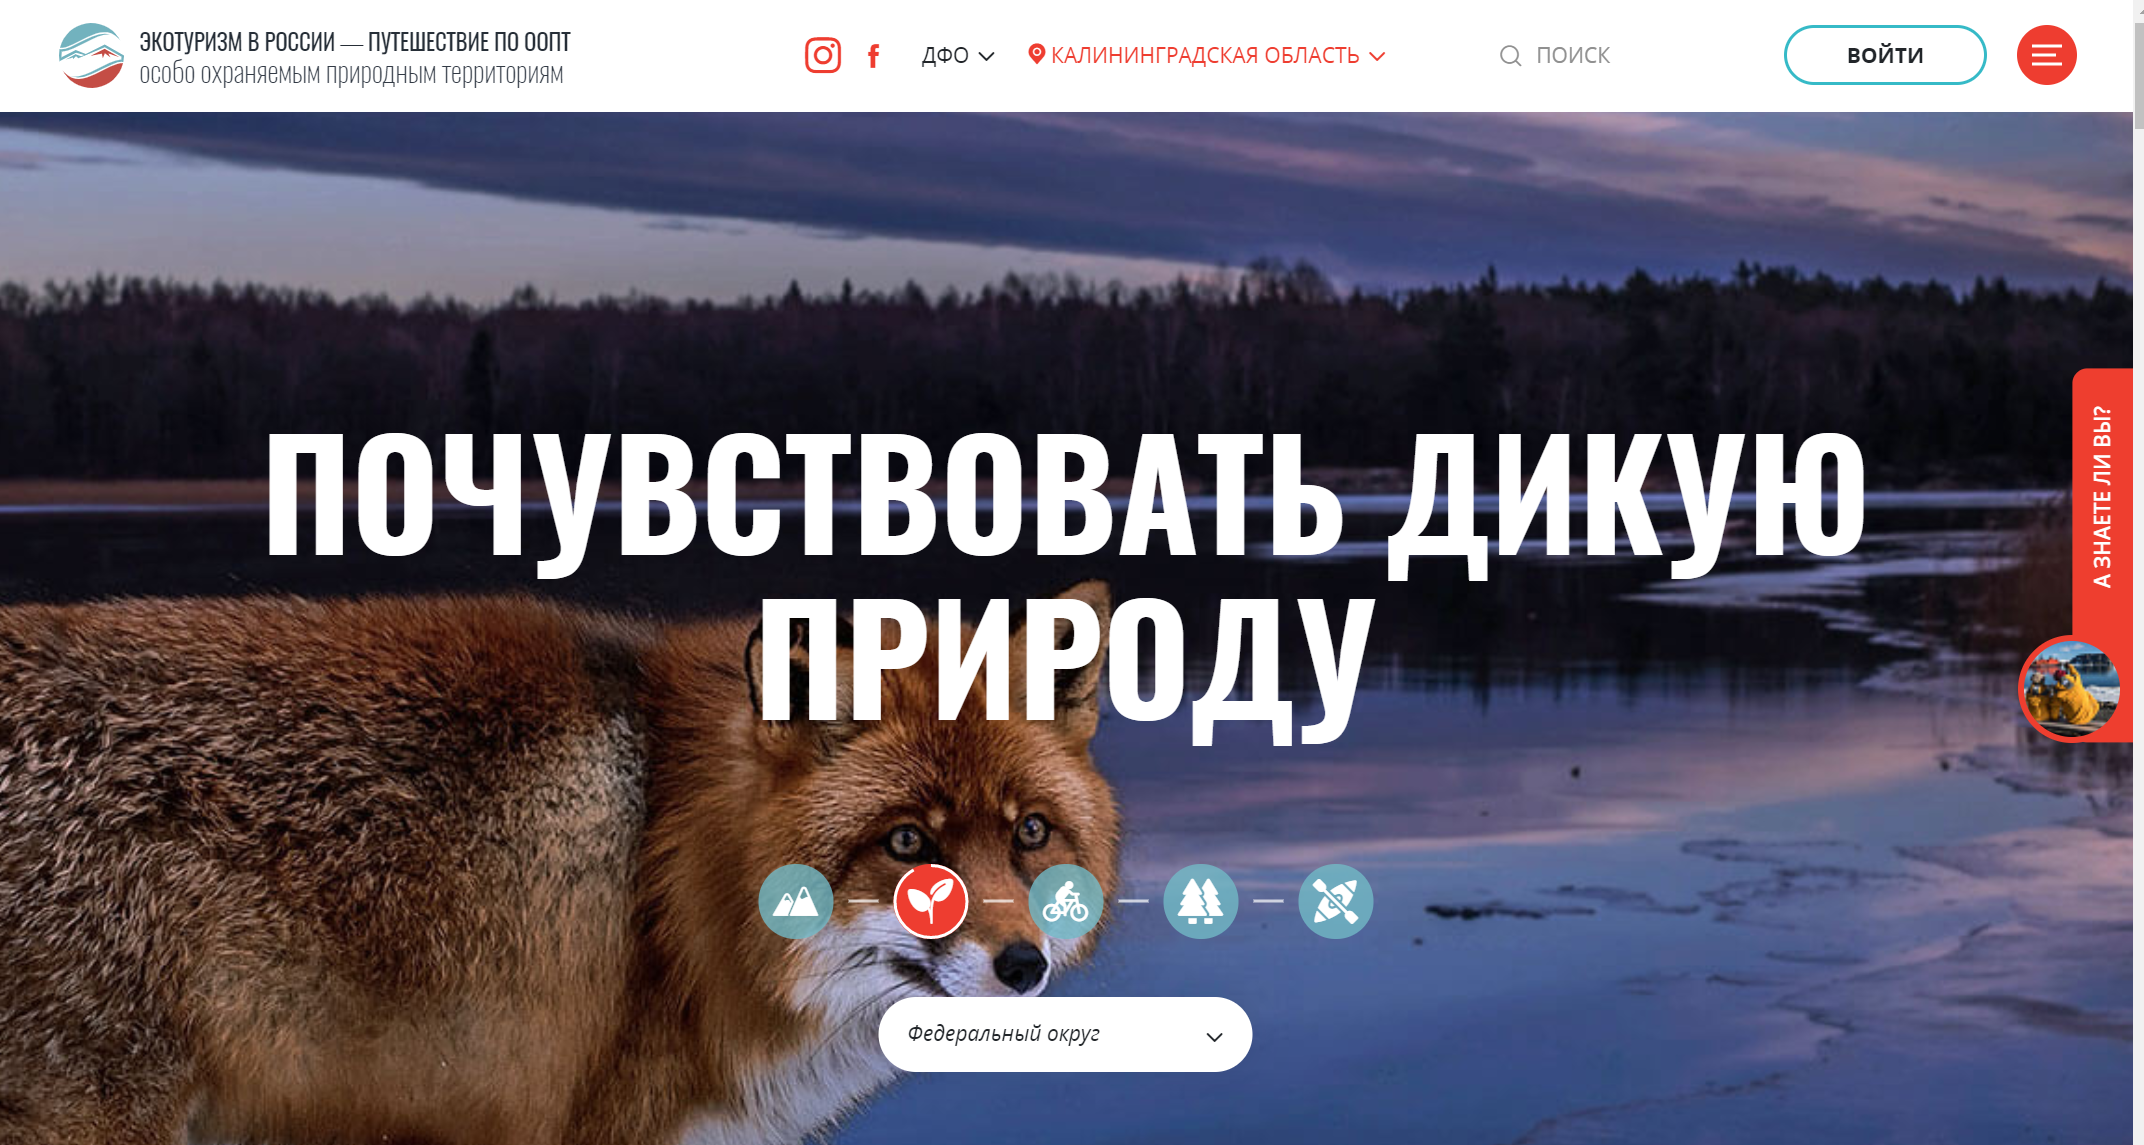 информационный портал экотуризм в россии